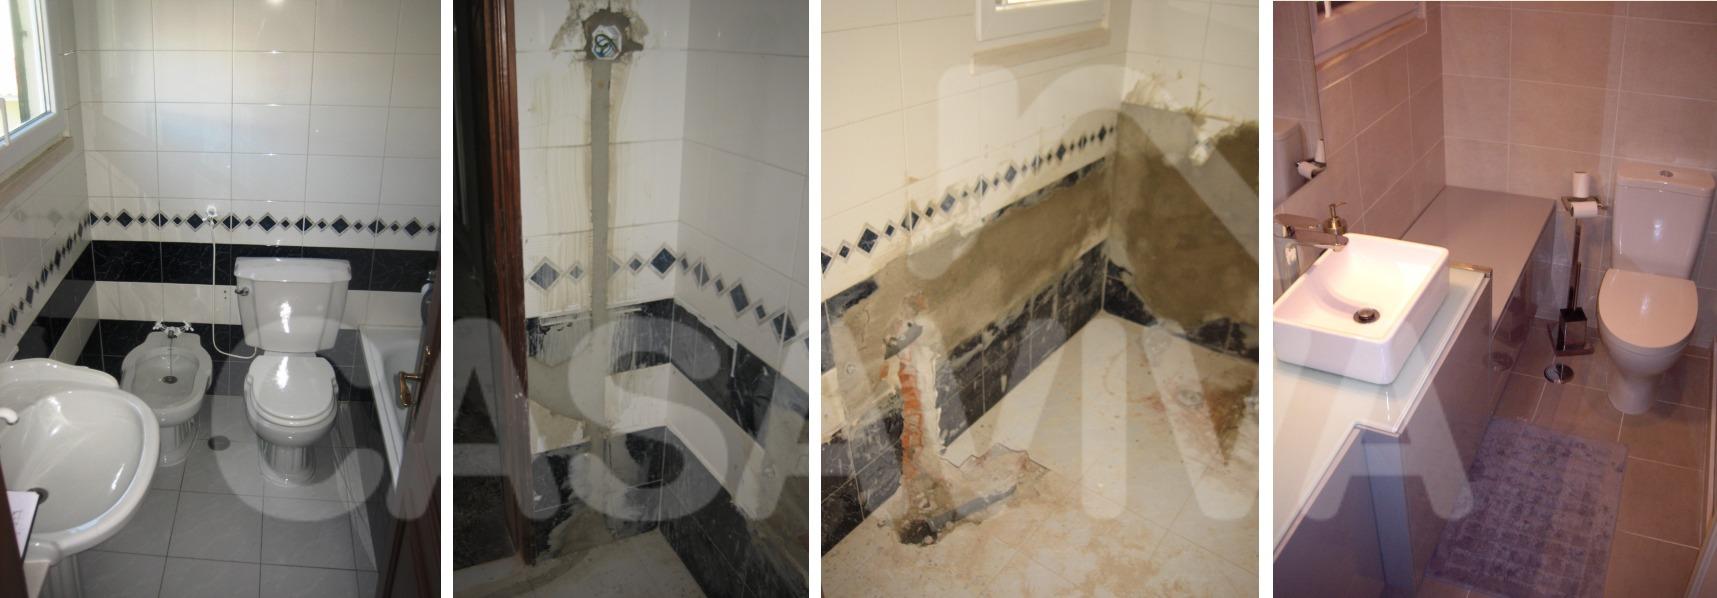 As imagens mostram a evoluo dos trabalhos executados nesta instalao sanitria.